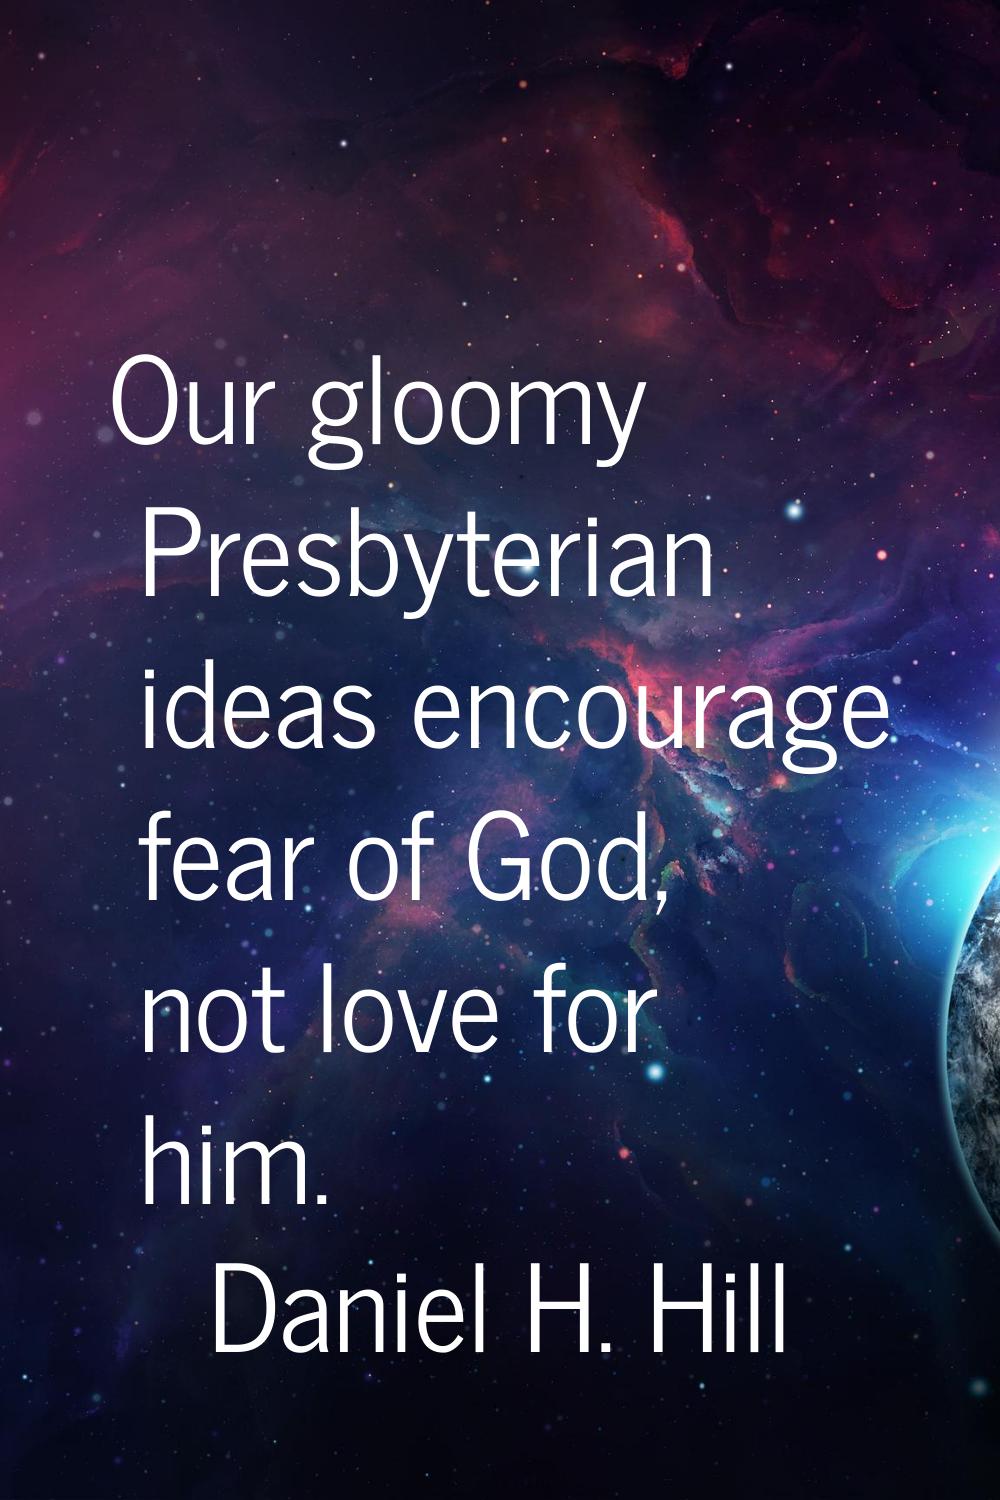 Our gloomy Presbyterian ideas encourage fear of God, not love for him.